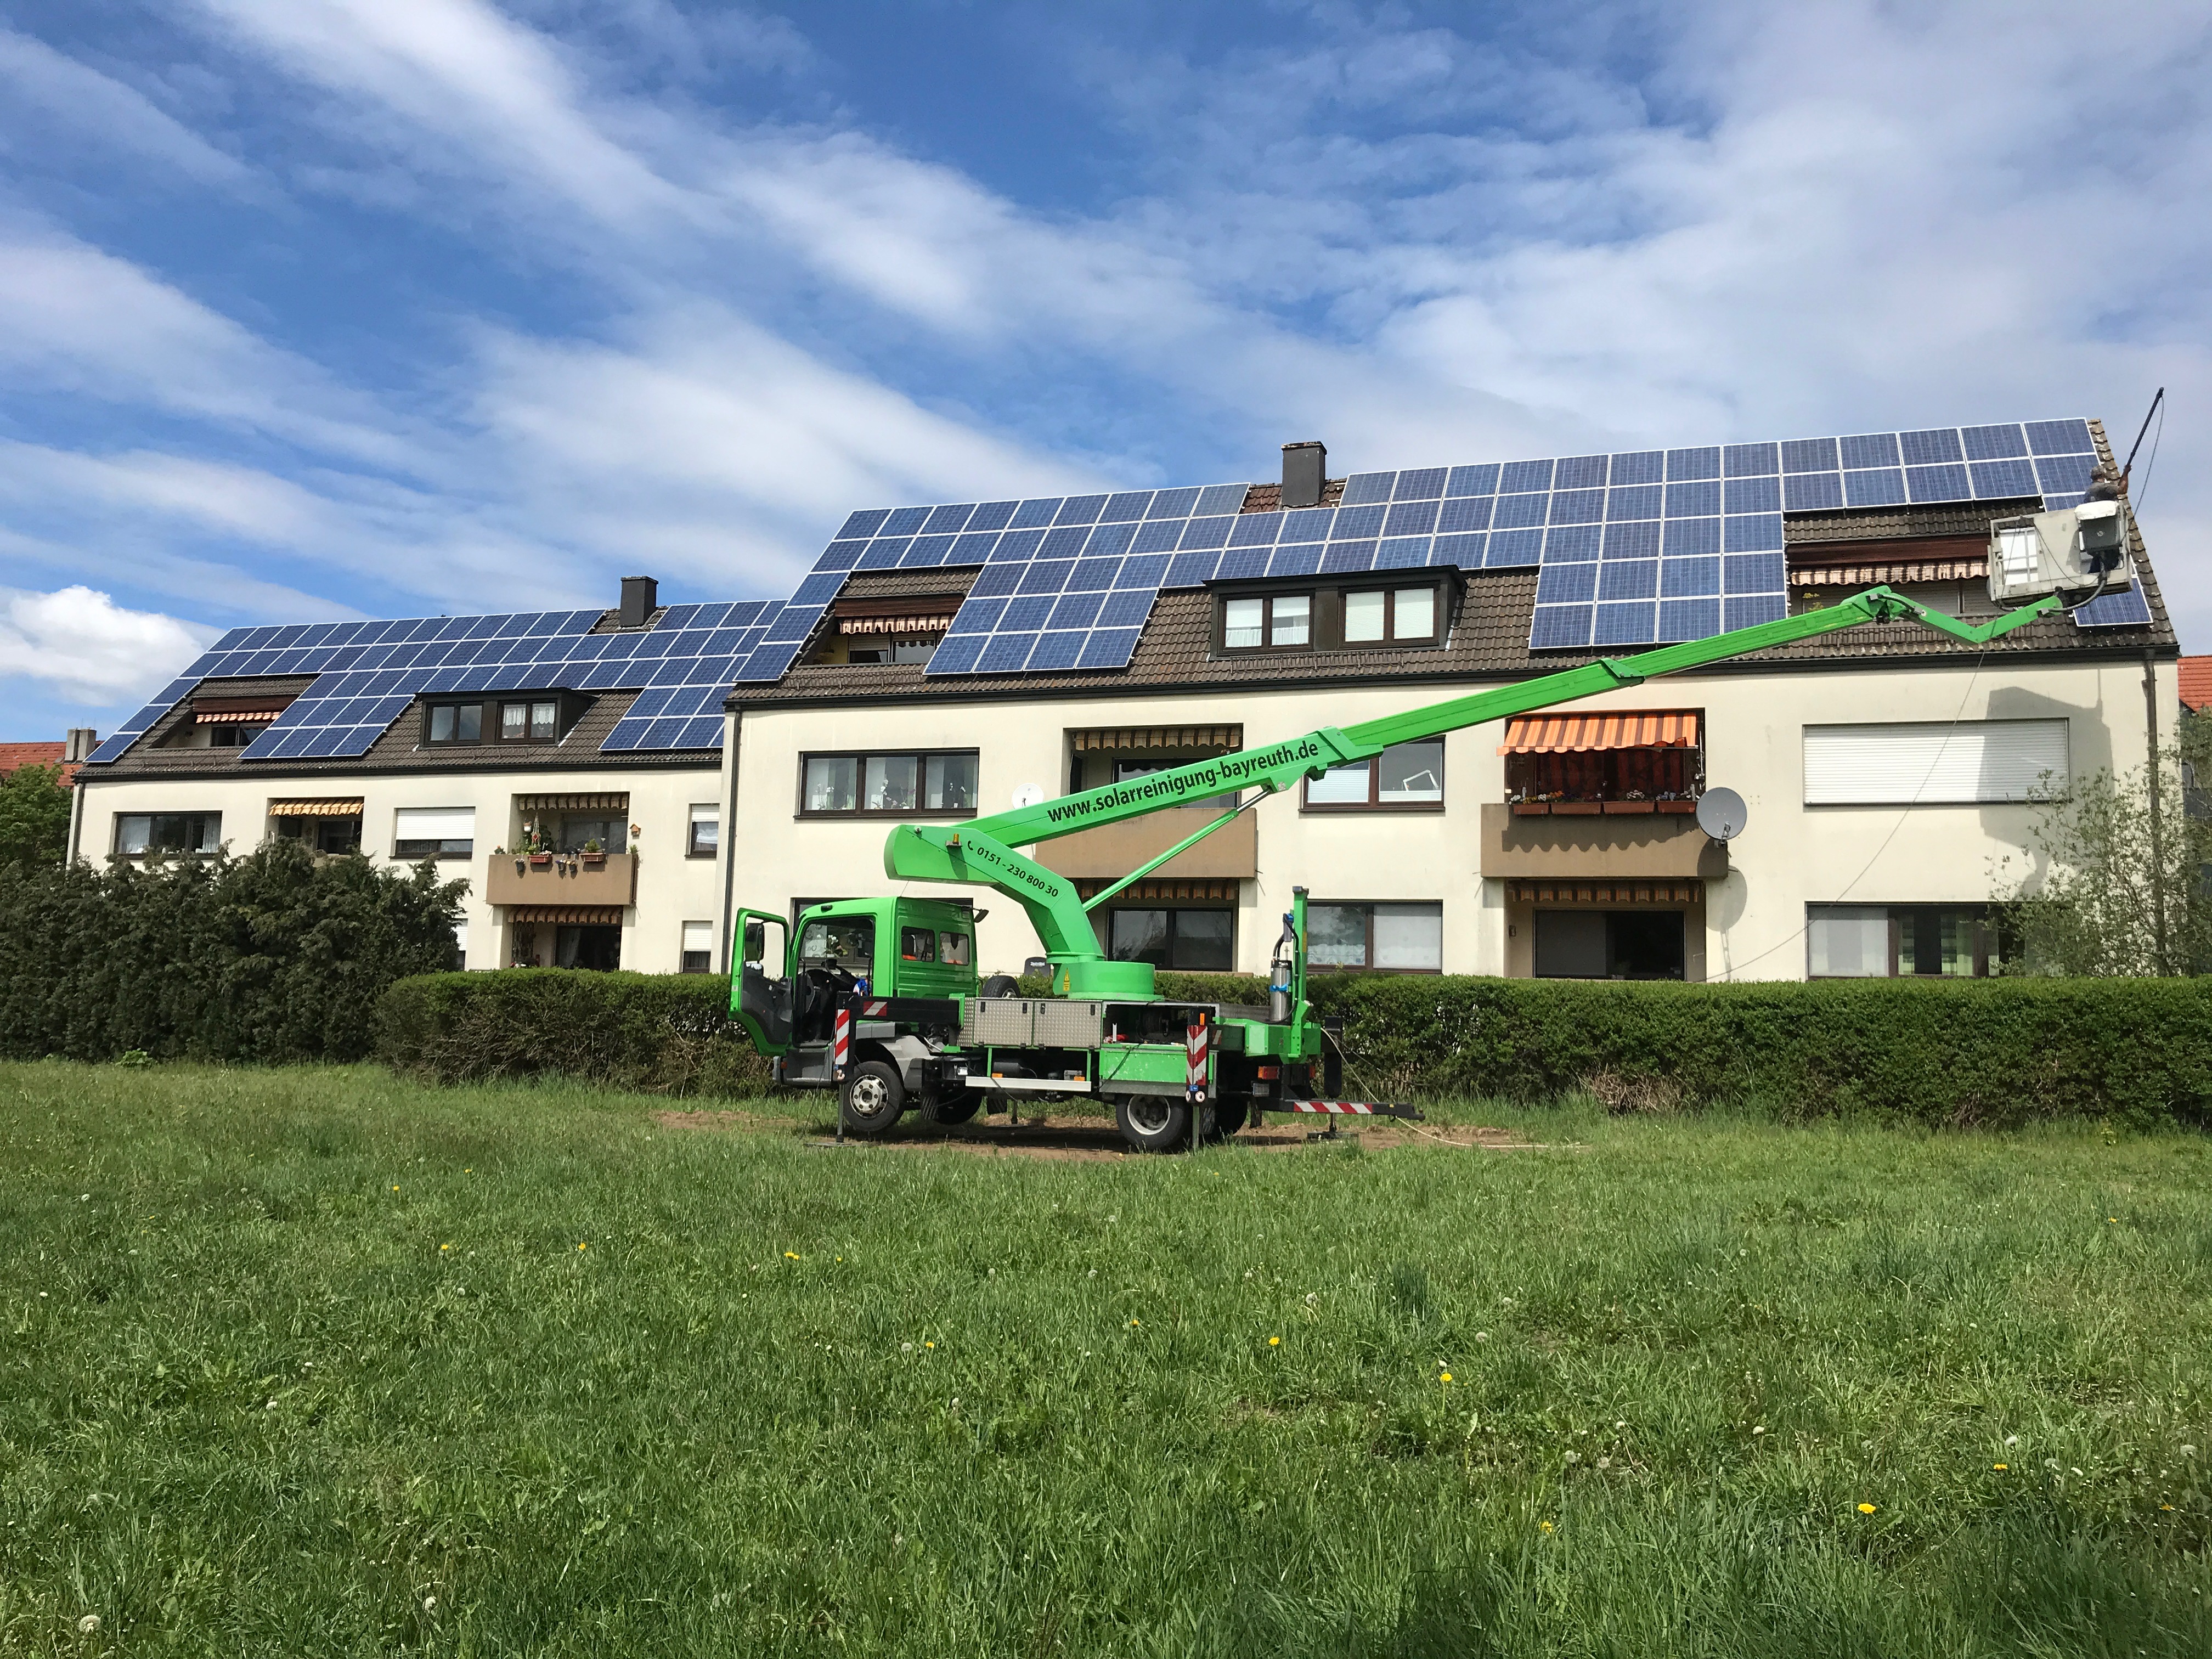 //www.solarreinigung-bayreuth.de/wp-content/uploads/2019/06/IMG_3045.jpeg